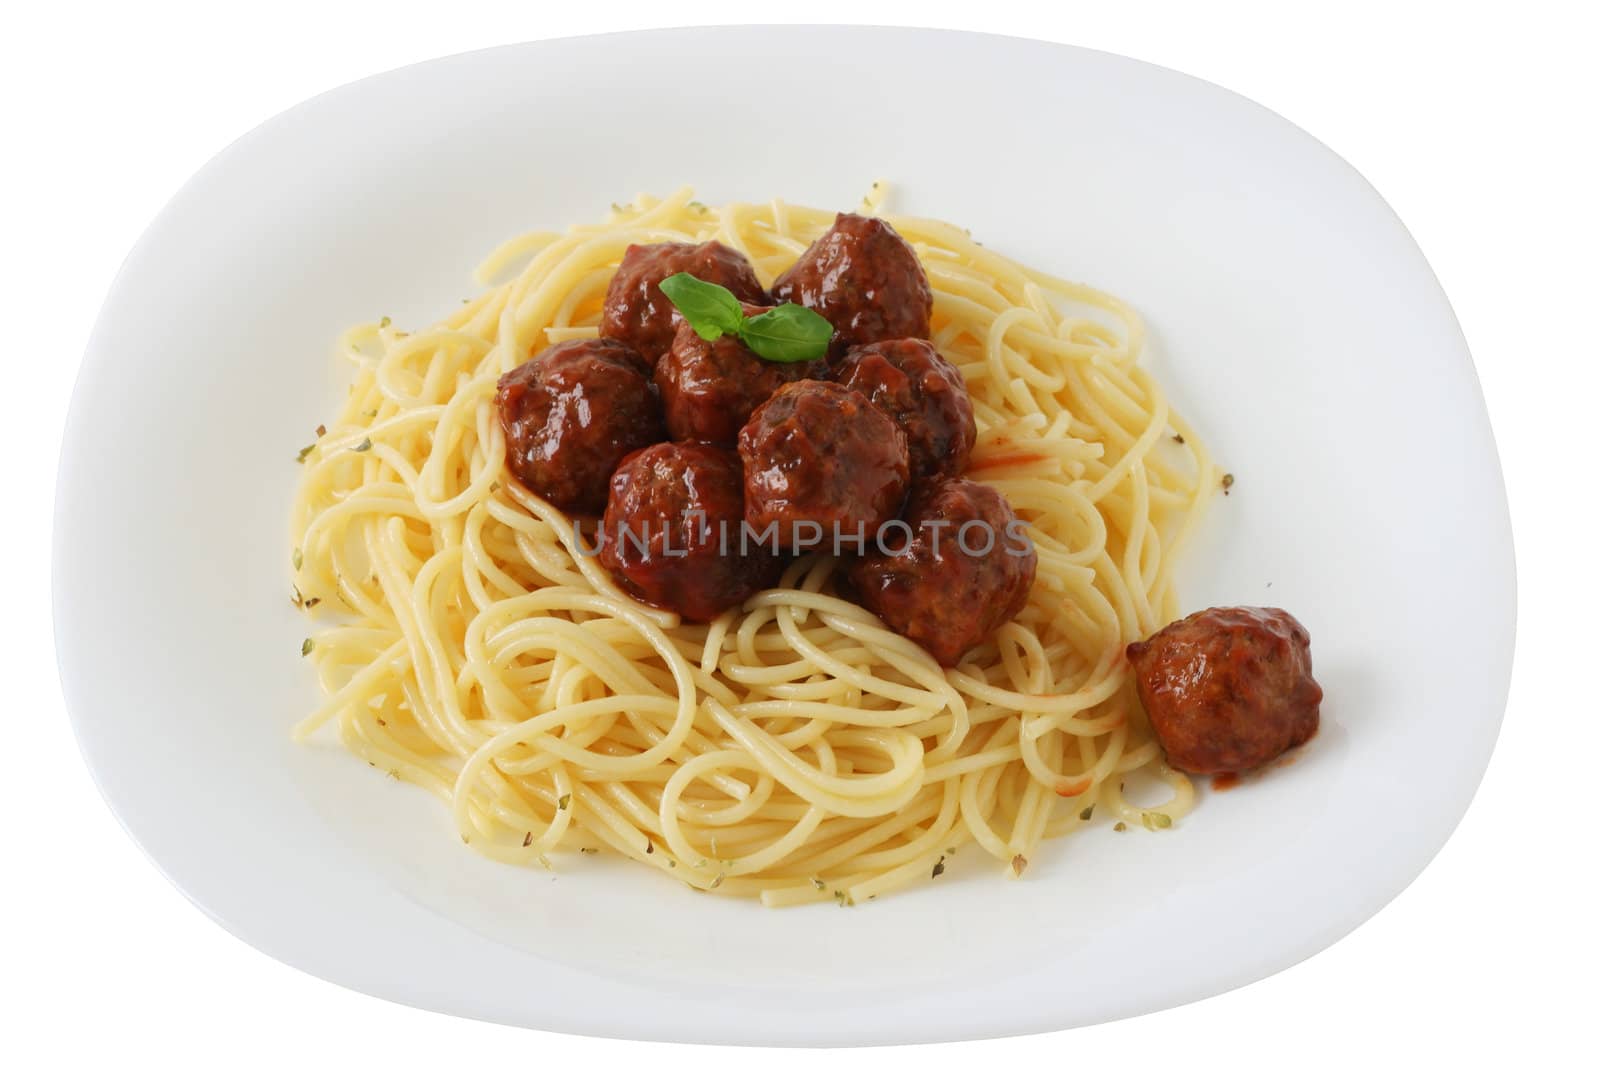 meatballs in spaghetti